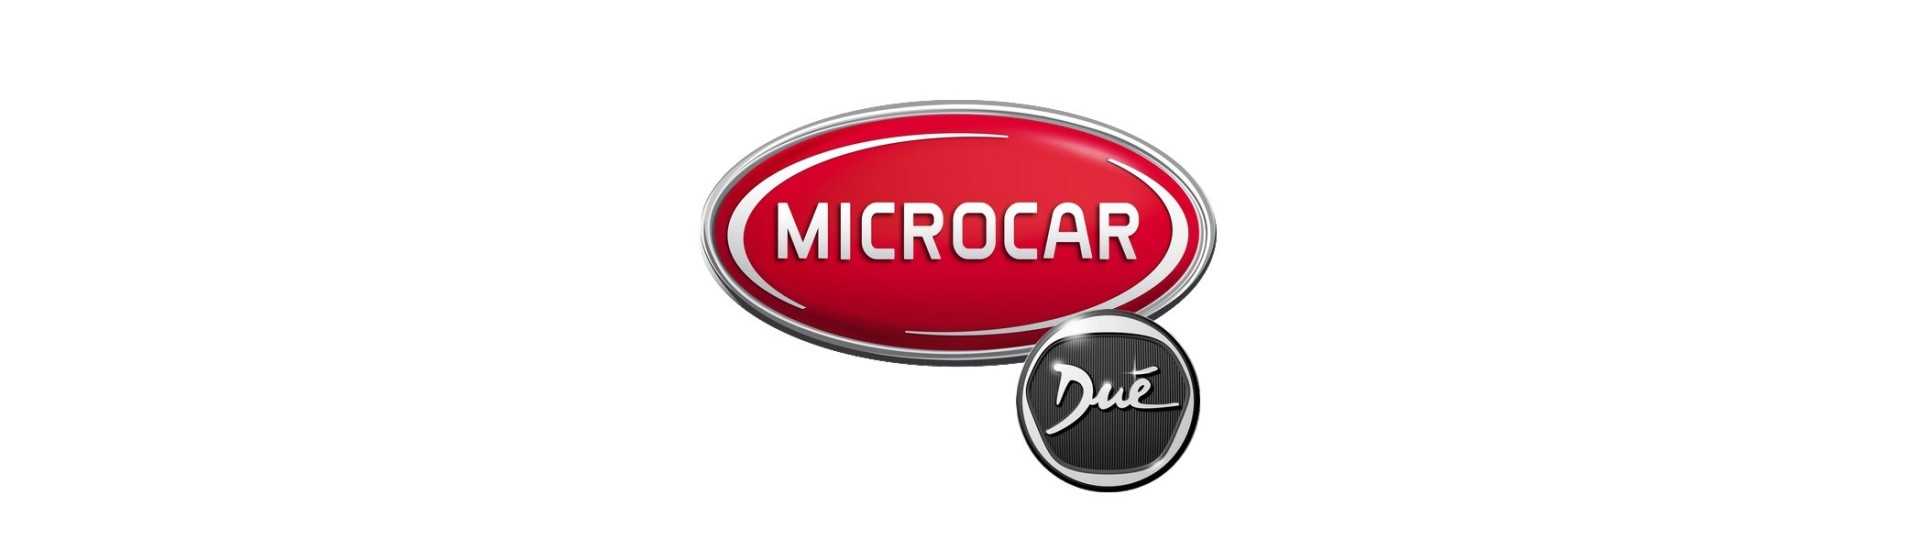 Catadioptre zum besten Preis für Auto ohne Lizenz Microcar Dué